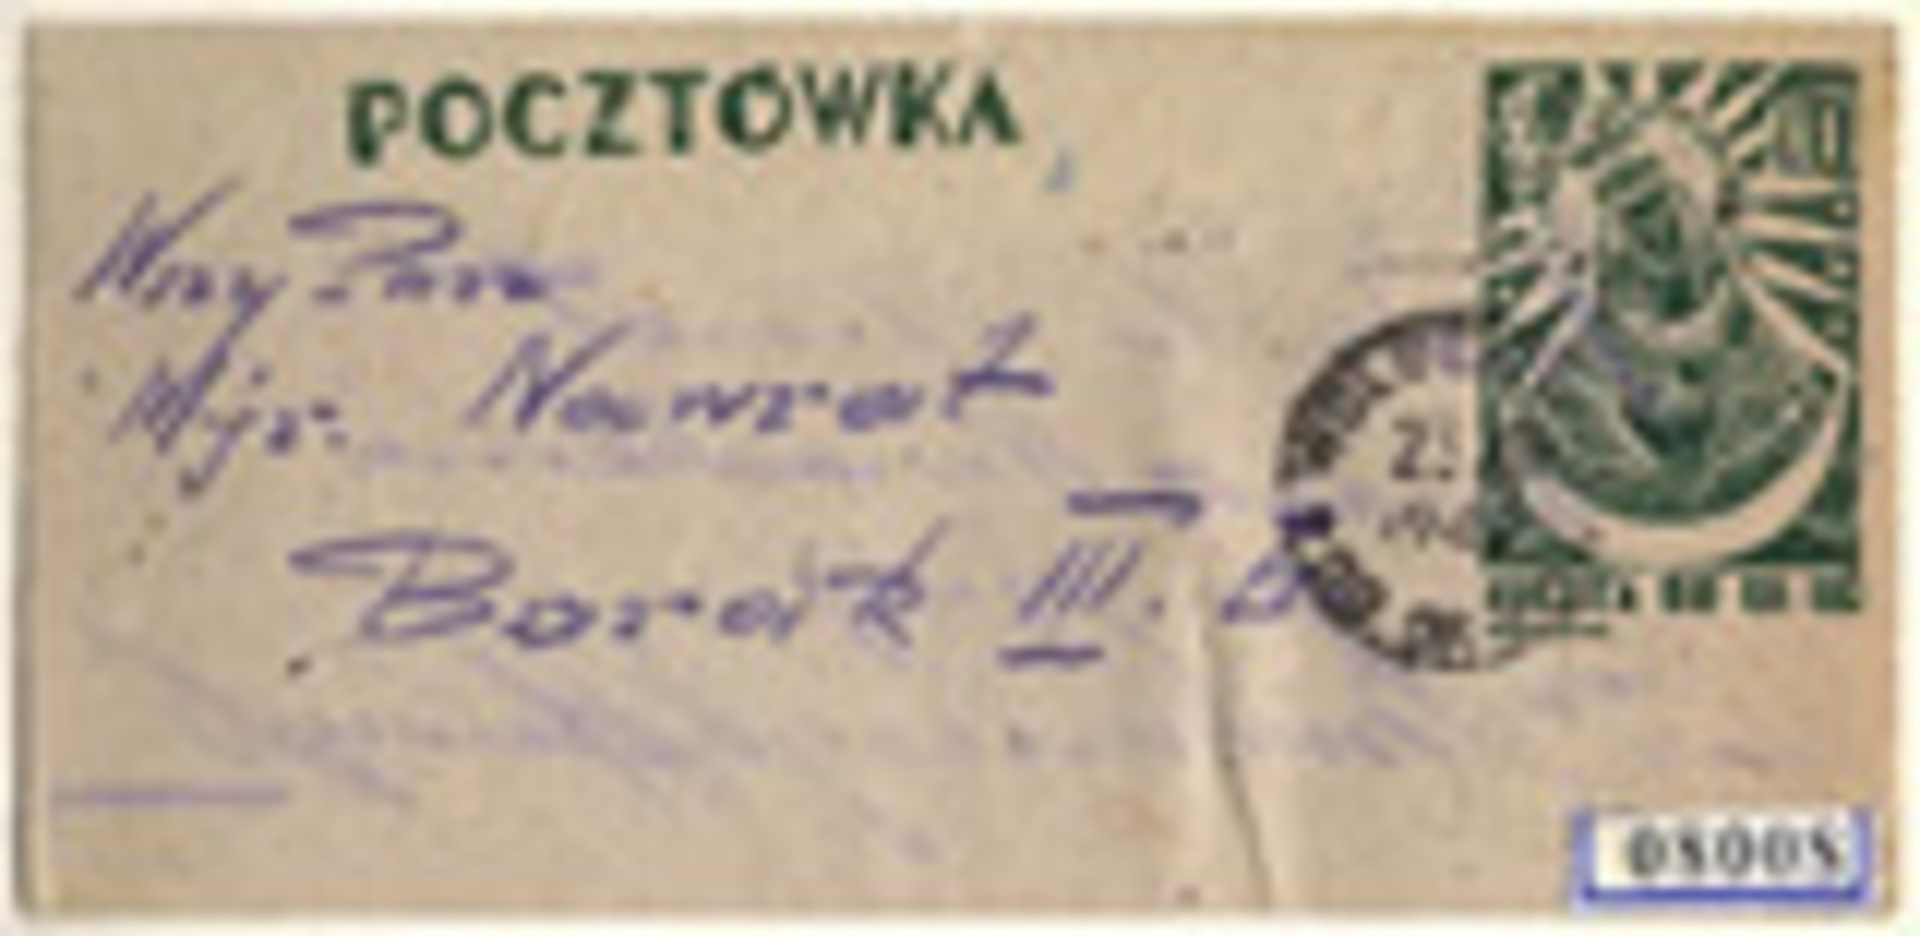 POW mail stamp